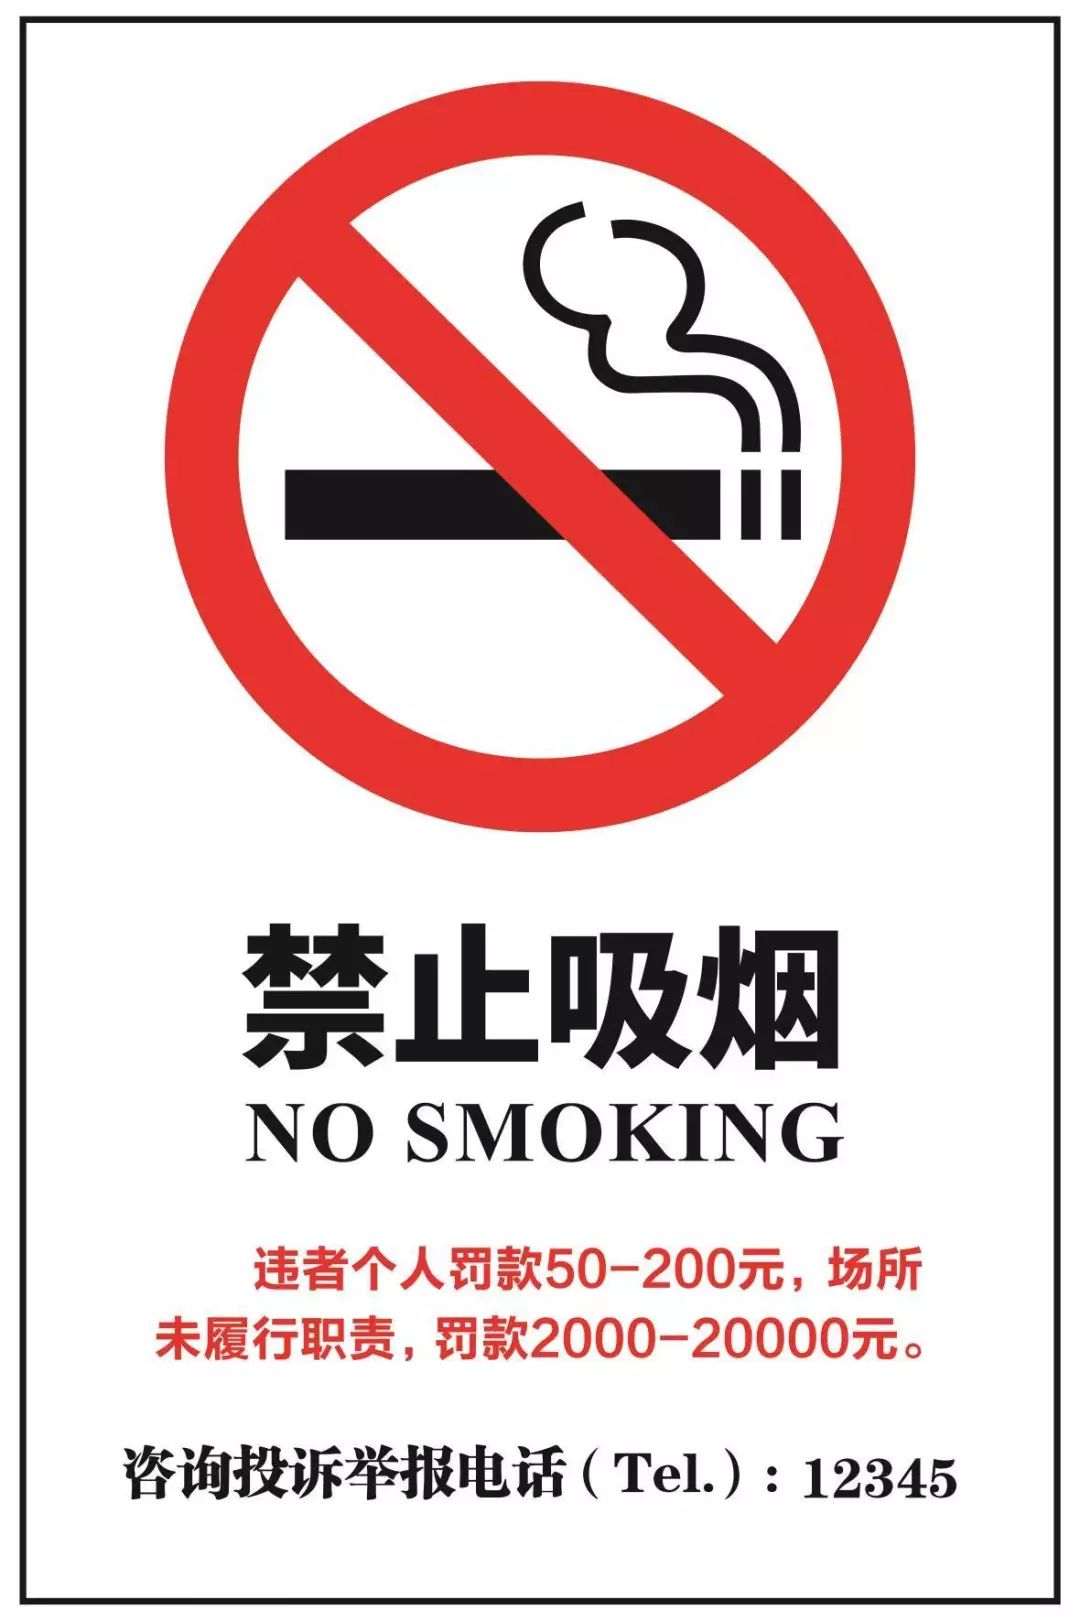 因此室内公共场所和工作场所禁止点燃烟草制品,禁止吸传统卷烟和电子